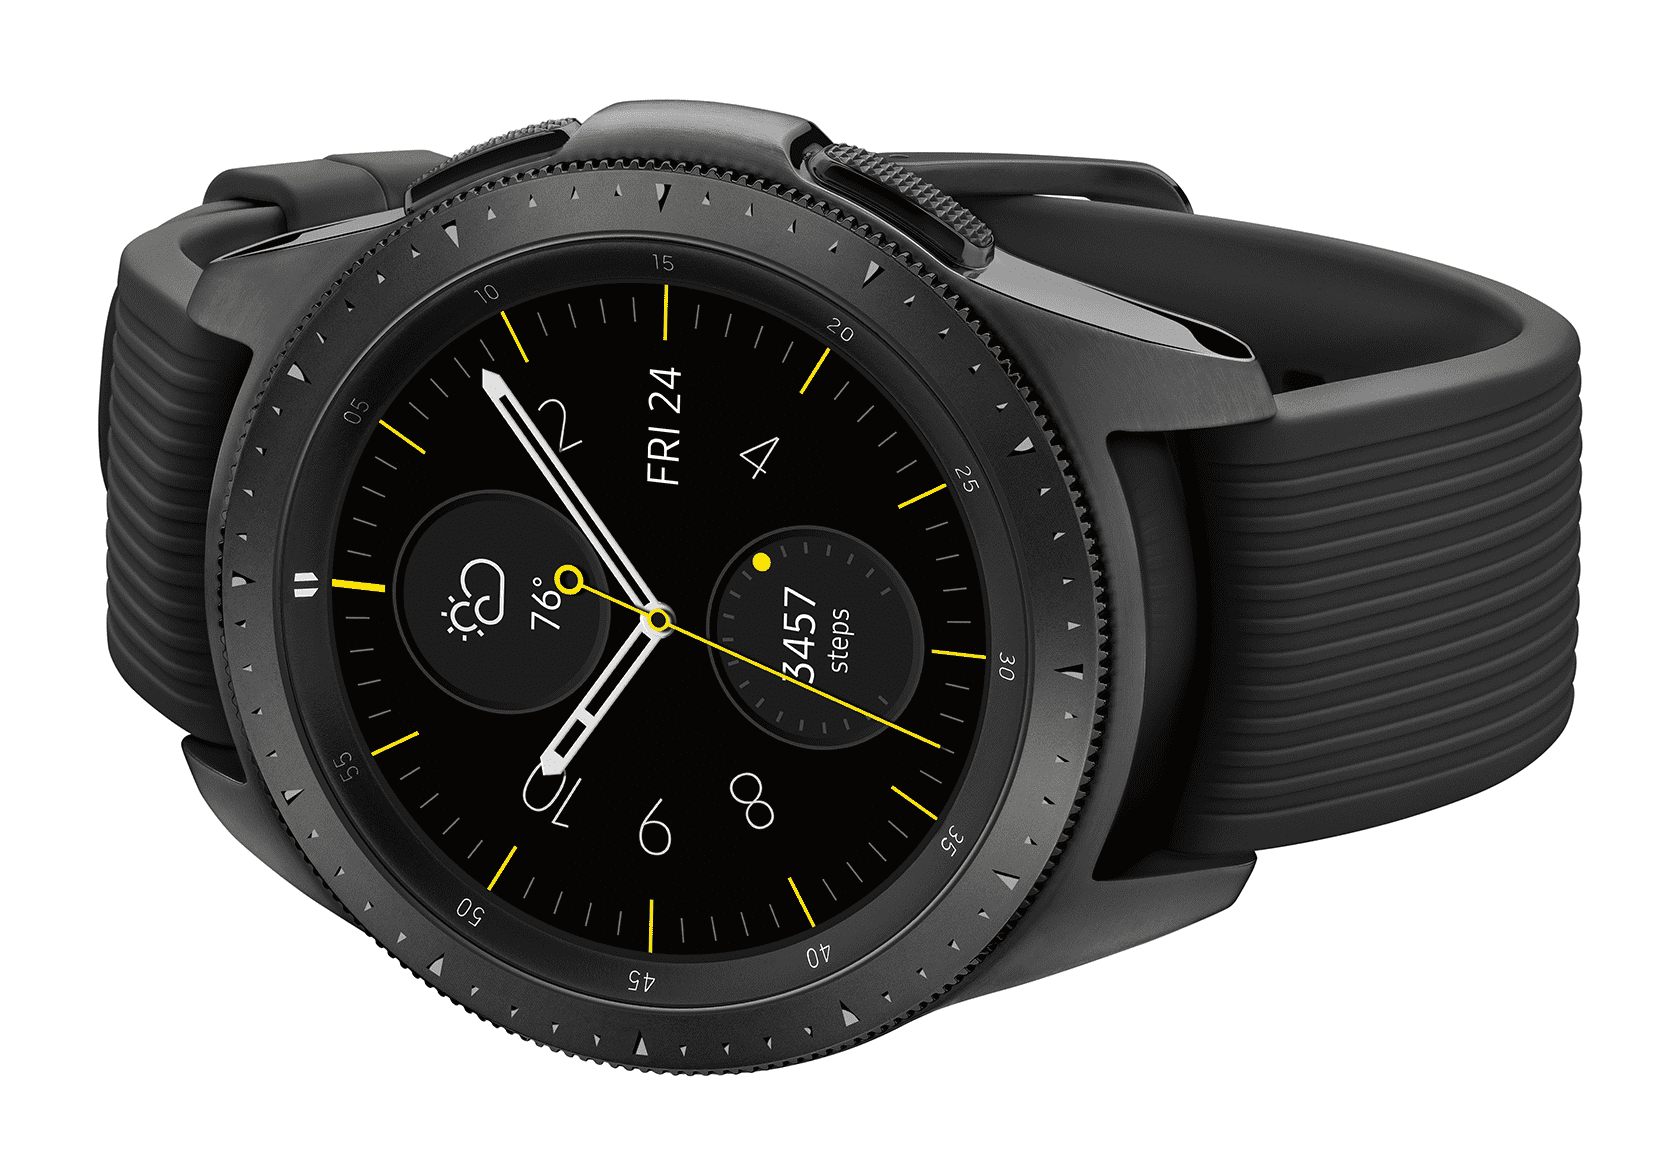 Samsung galaxy watch r930. Samsung Galaxy watch r810. Samsung Galaxy watch 42mm. Samsung watch 42mm.